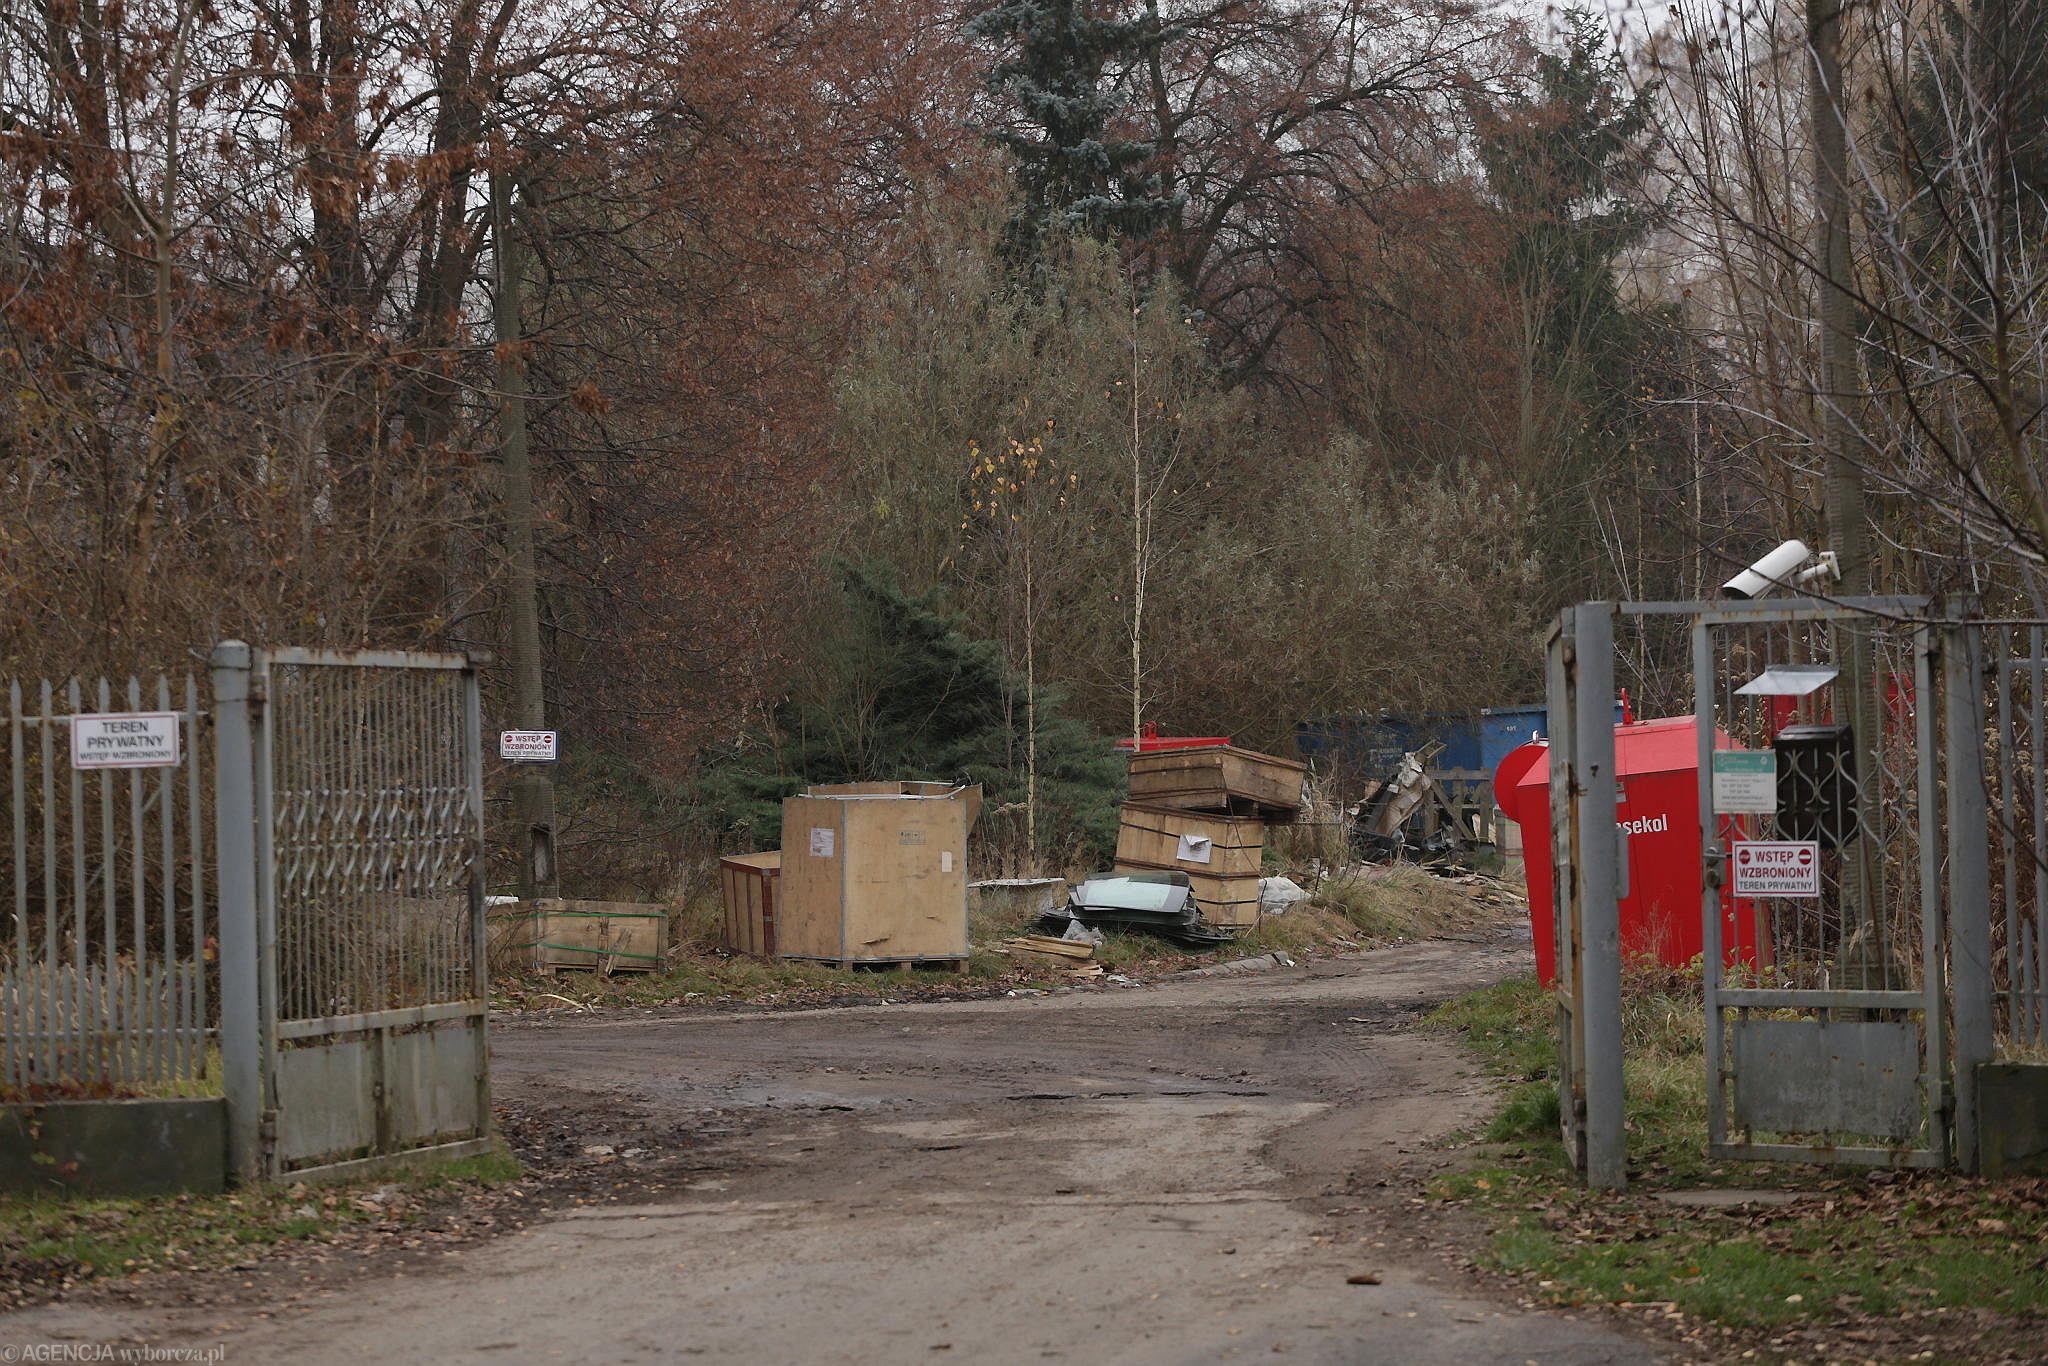 Порожнє приміщення на сміттєзвалищі: як живуть українські біженці у Польщі? - фото 3